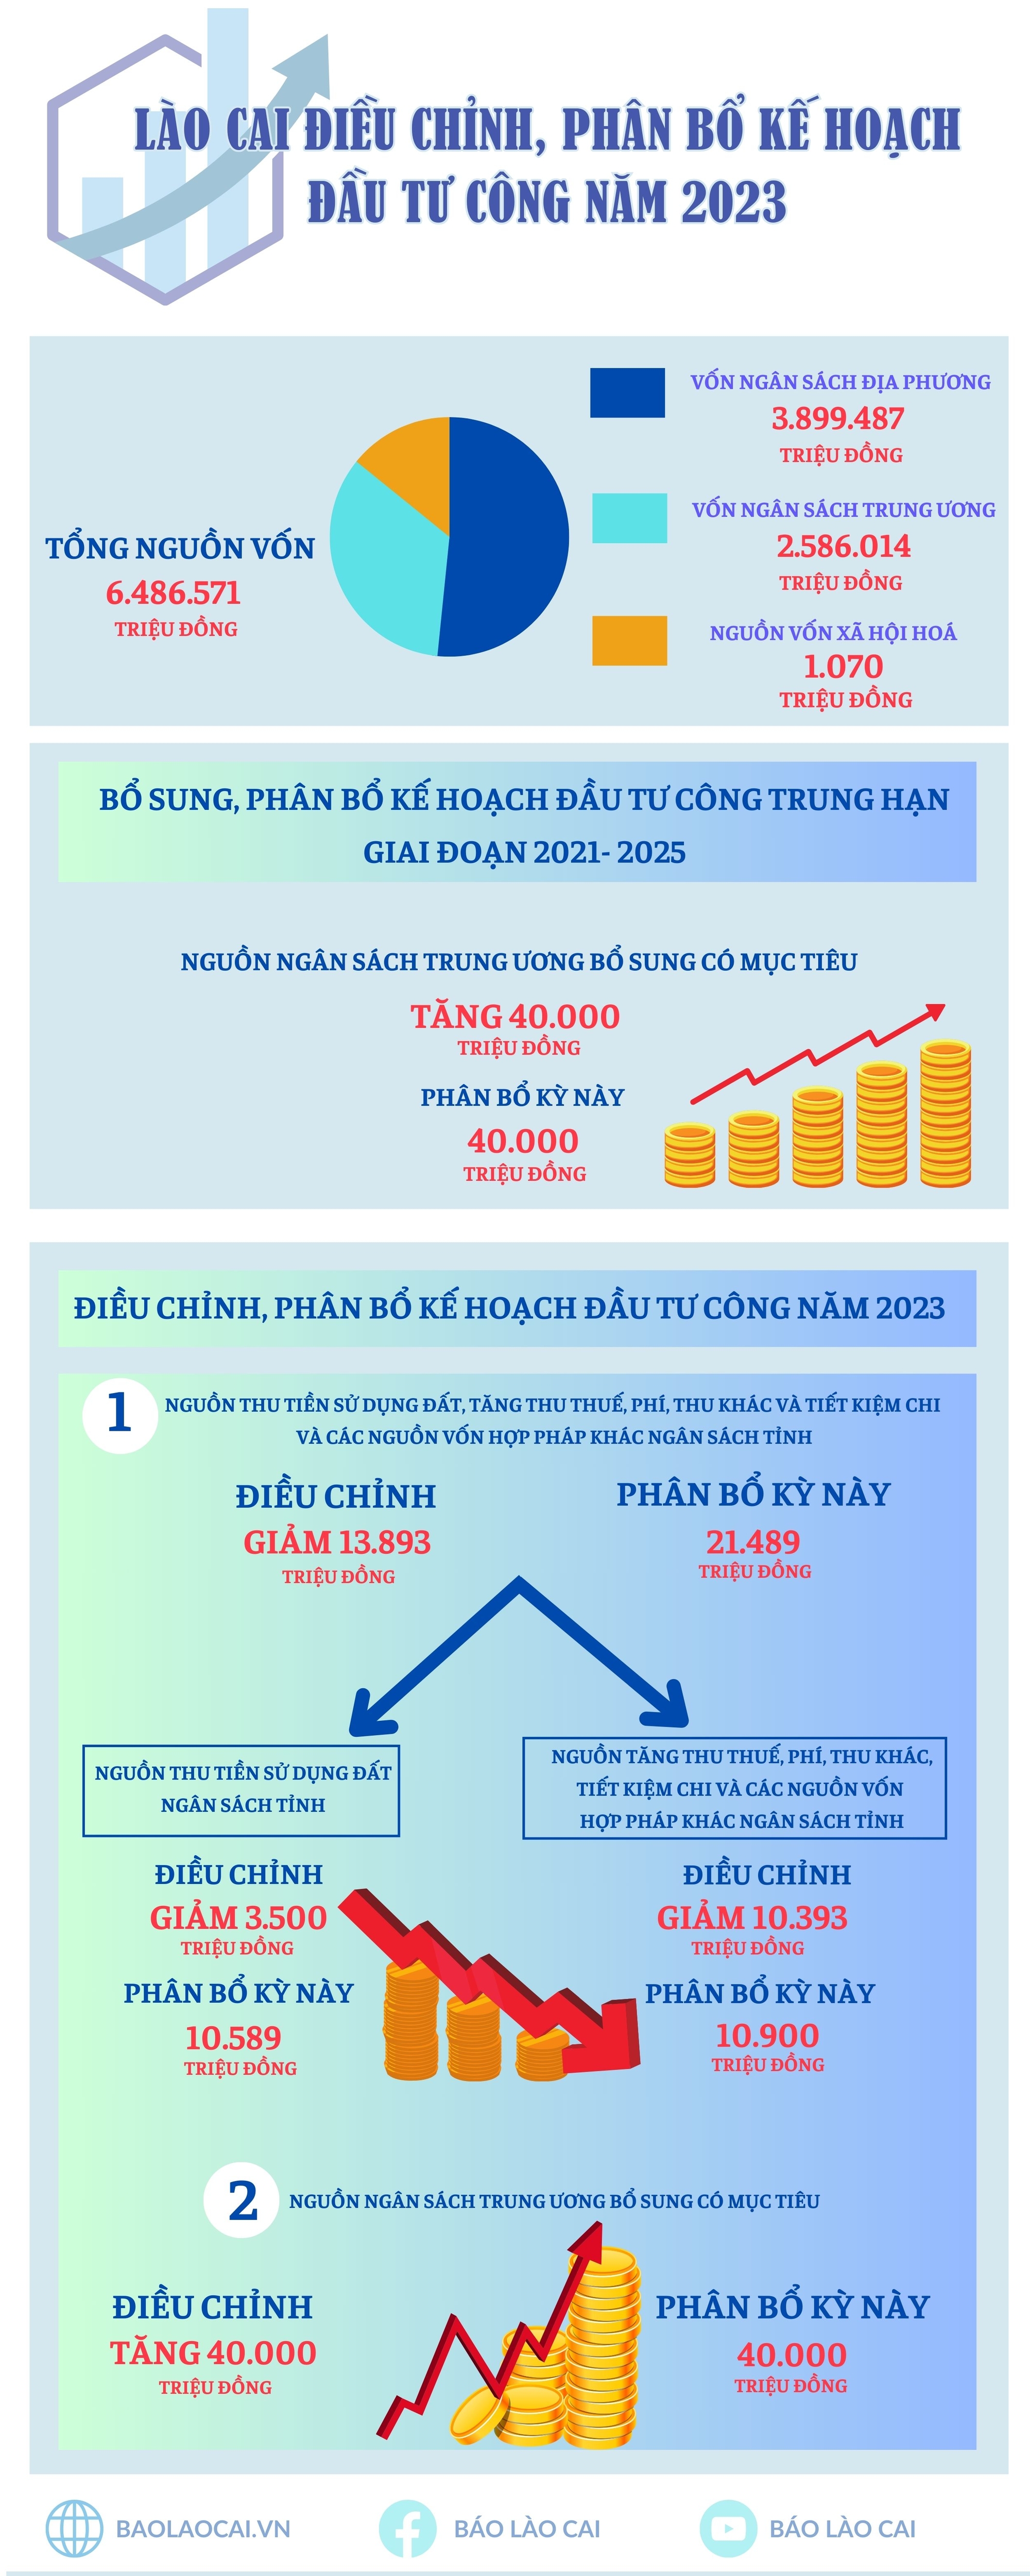 Điều chỉnh, phân bổ kế hoạch đầu tư công trung hạn giai đoạn 2021 – 2025; điều chỉnh, phân bổ kế hoạch đầu tư công năm 2023 tỉnh Lào Cai (9).jpg